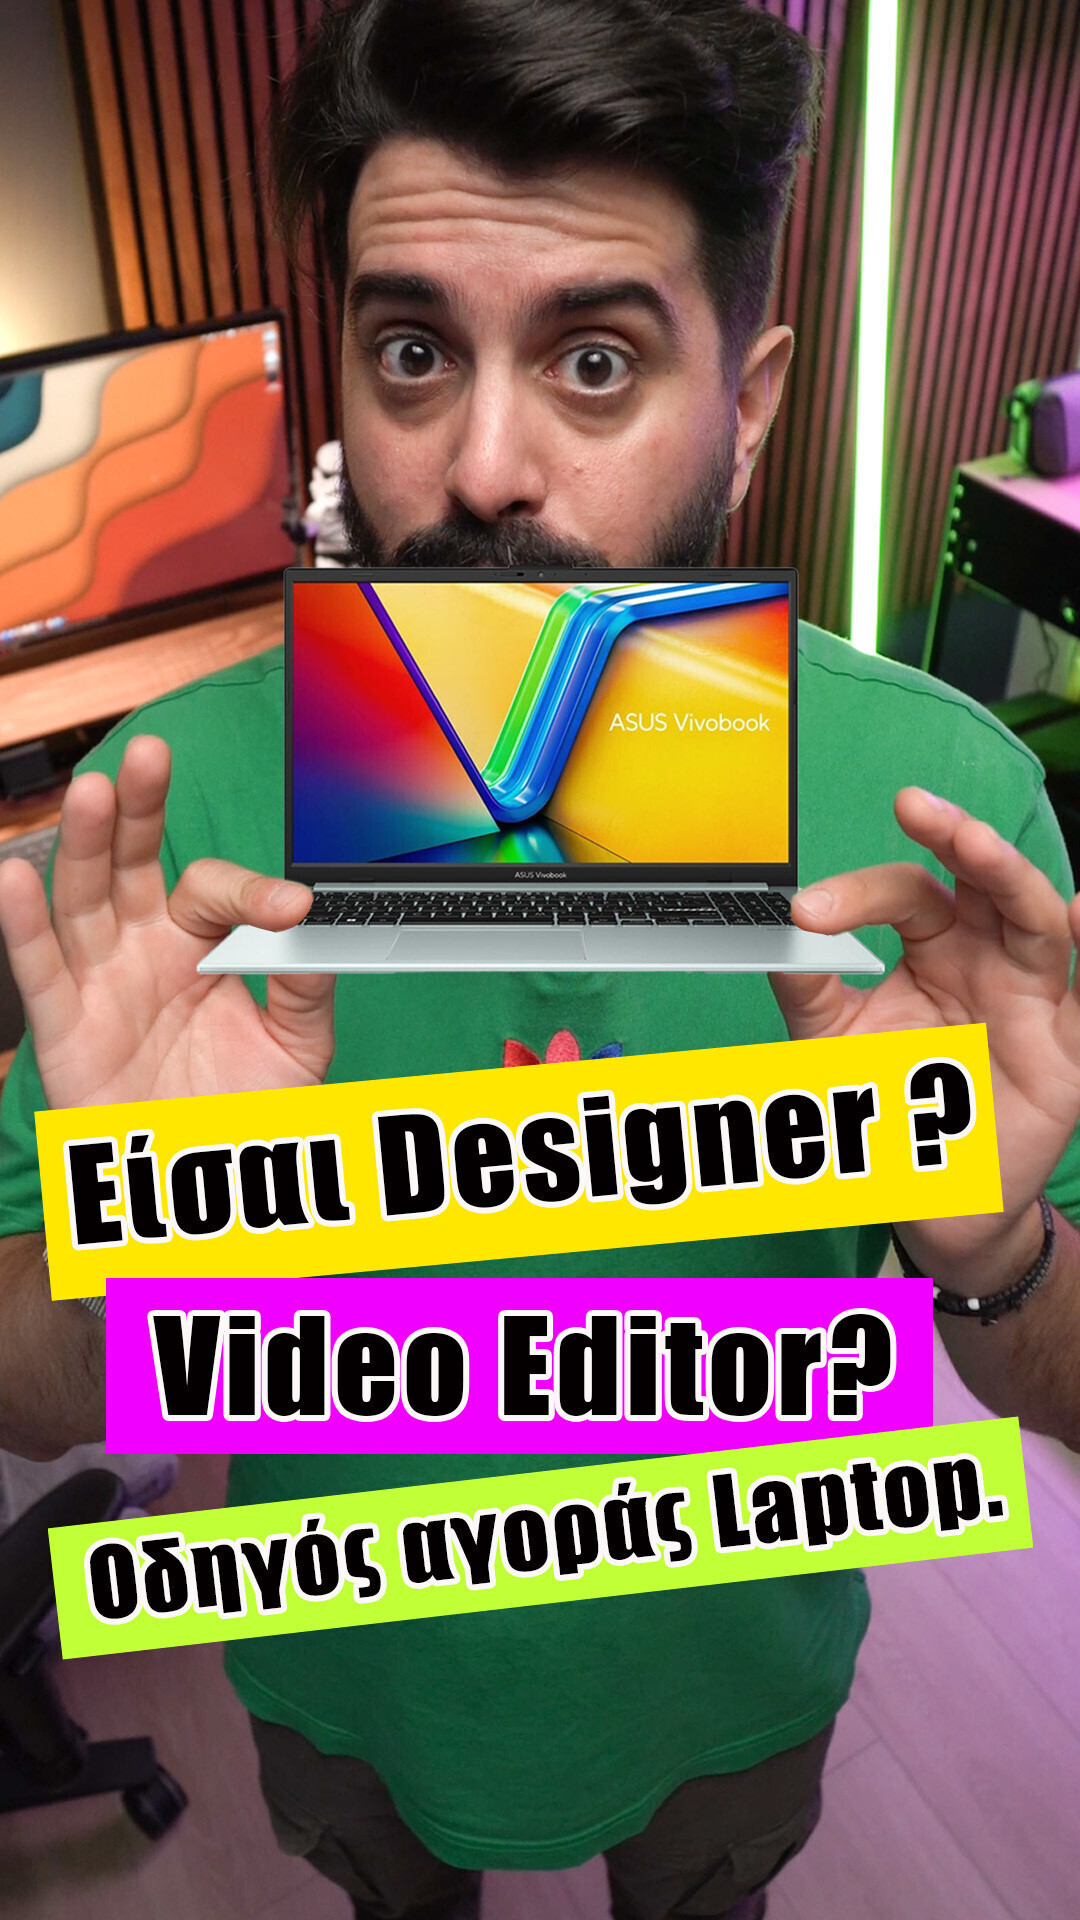 Auf der Suche nach einem Laptop für Video- und Designanwendungen? Schau dir das Video an!